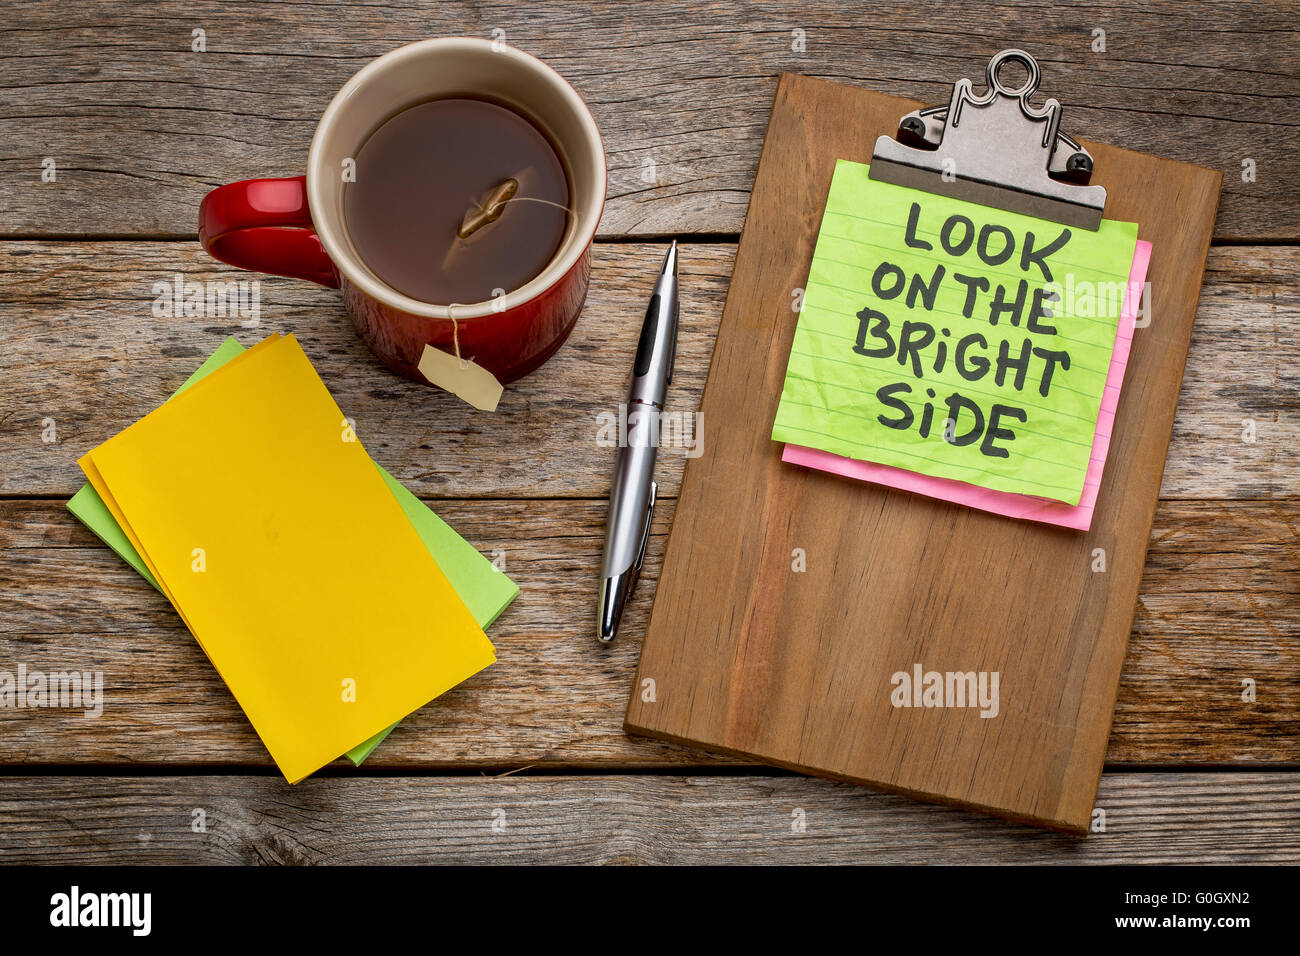 Guardare il lato luminoso di consulenza o di promemoria - nota adesiva su una clipboard con una tazza di tè Foto Stock